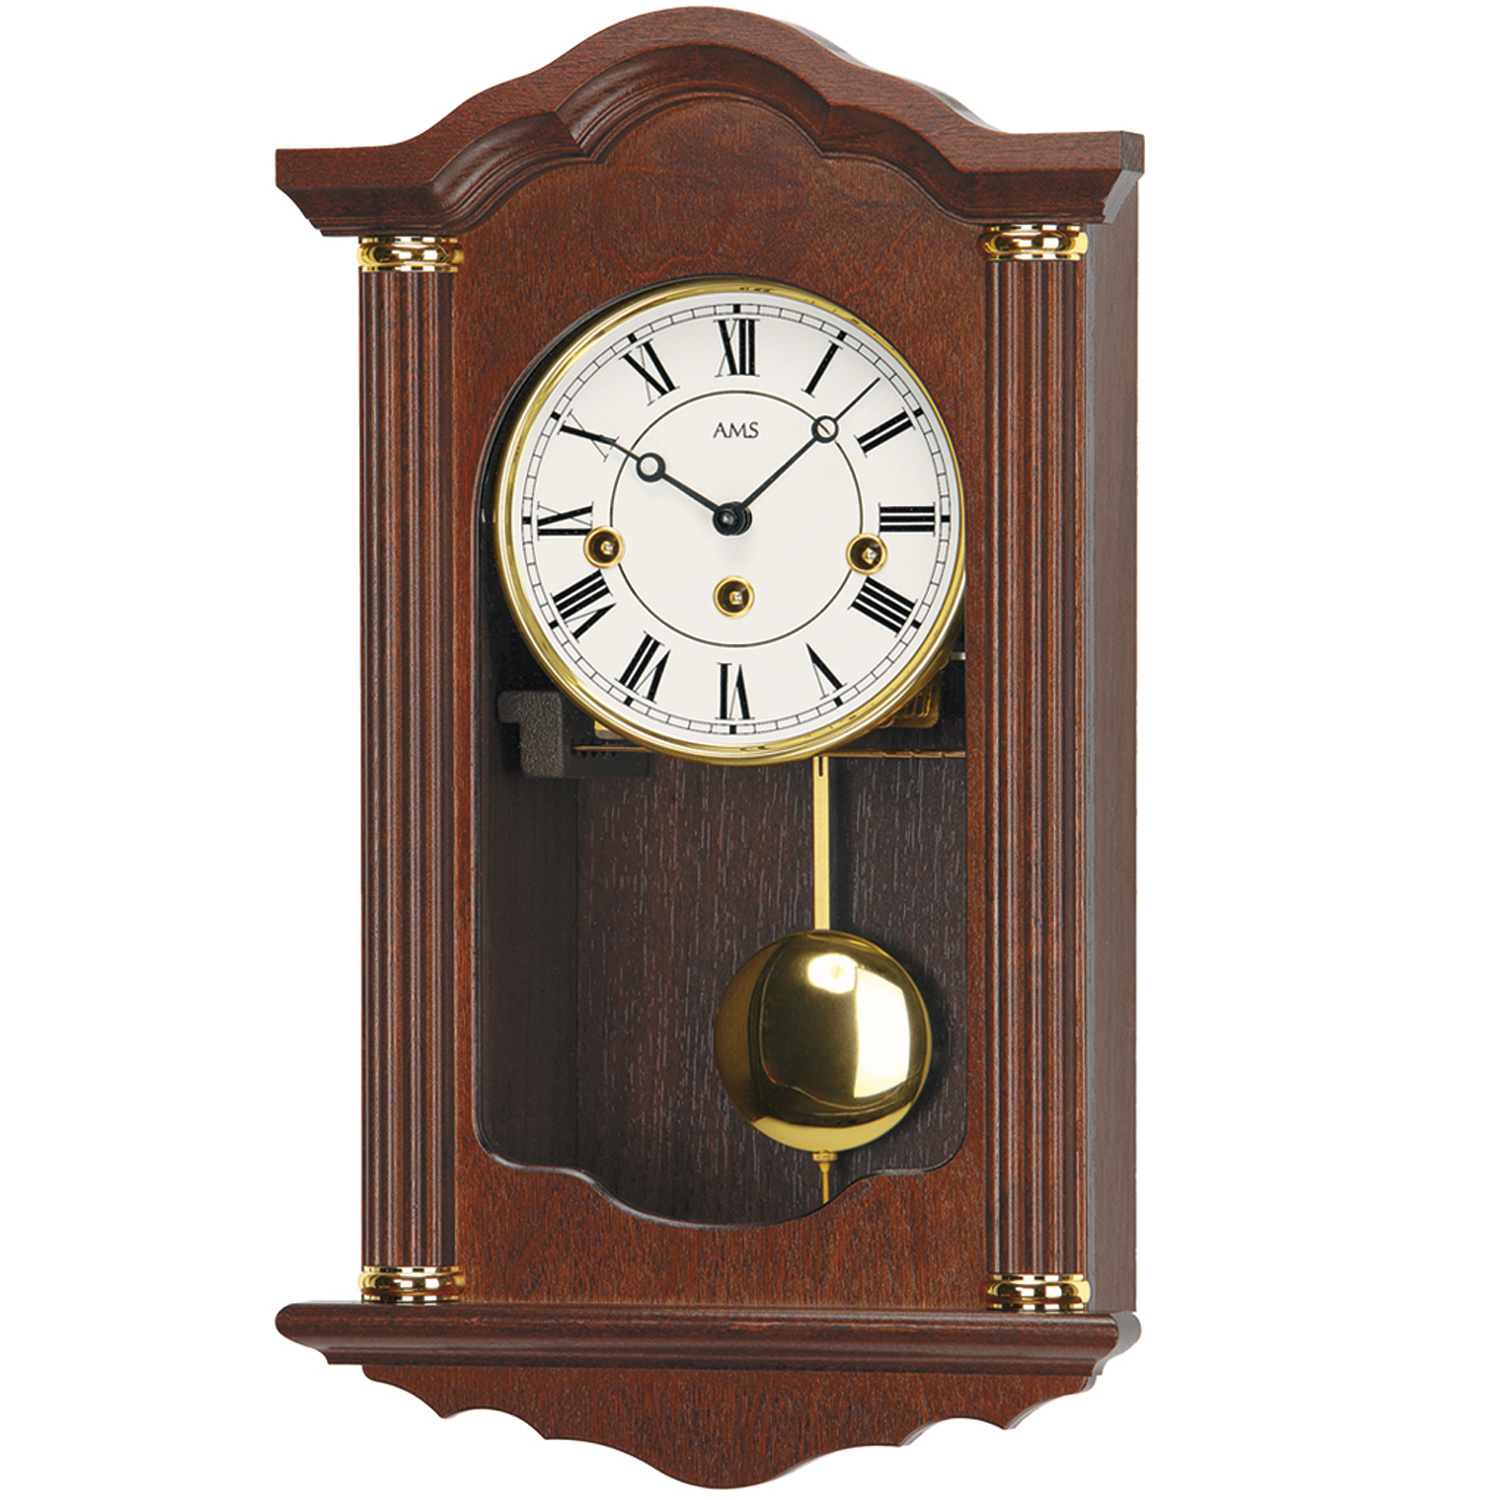 Часы с маятником недорого. Westminster Chime часы настенные. AMS R 2765/1 часы настенные. Westminster Chime часы Quartz. Механические часы с маятником.